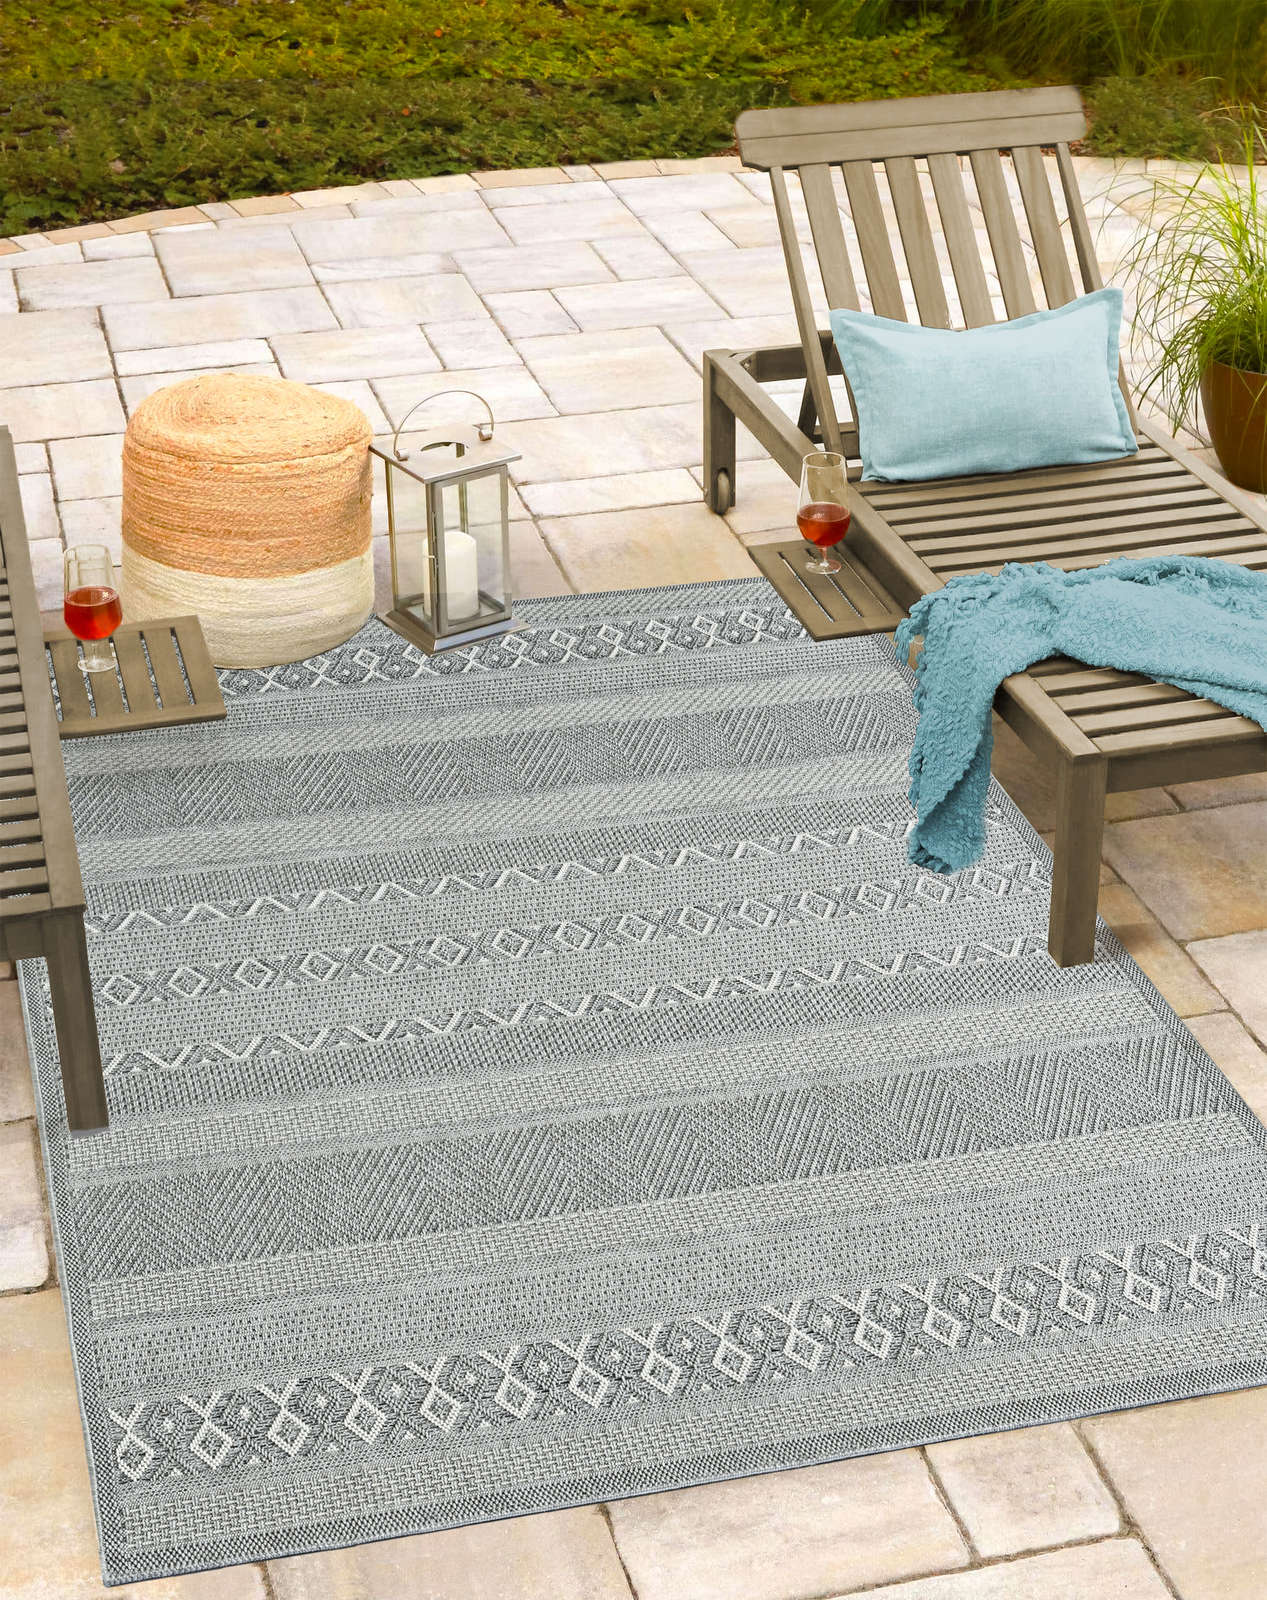             Schlicht Bemusterter Outdoor Teppich in Grau – 280 x 200 cm
        